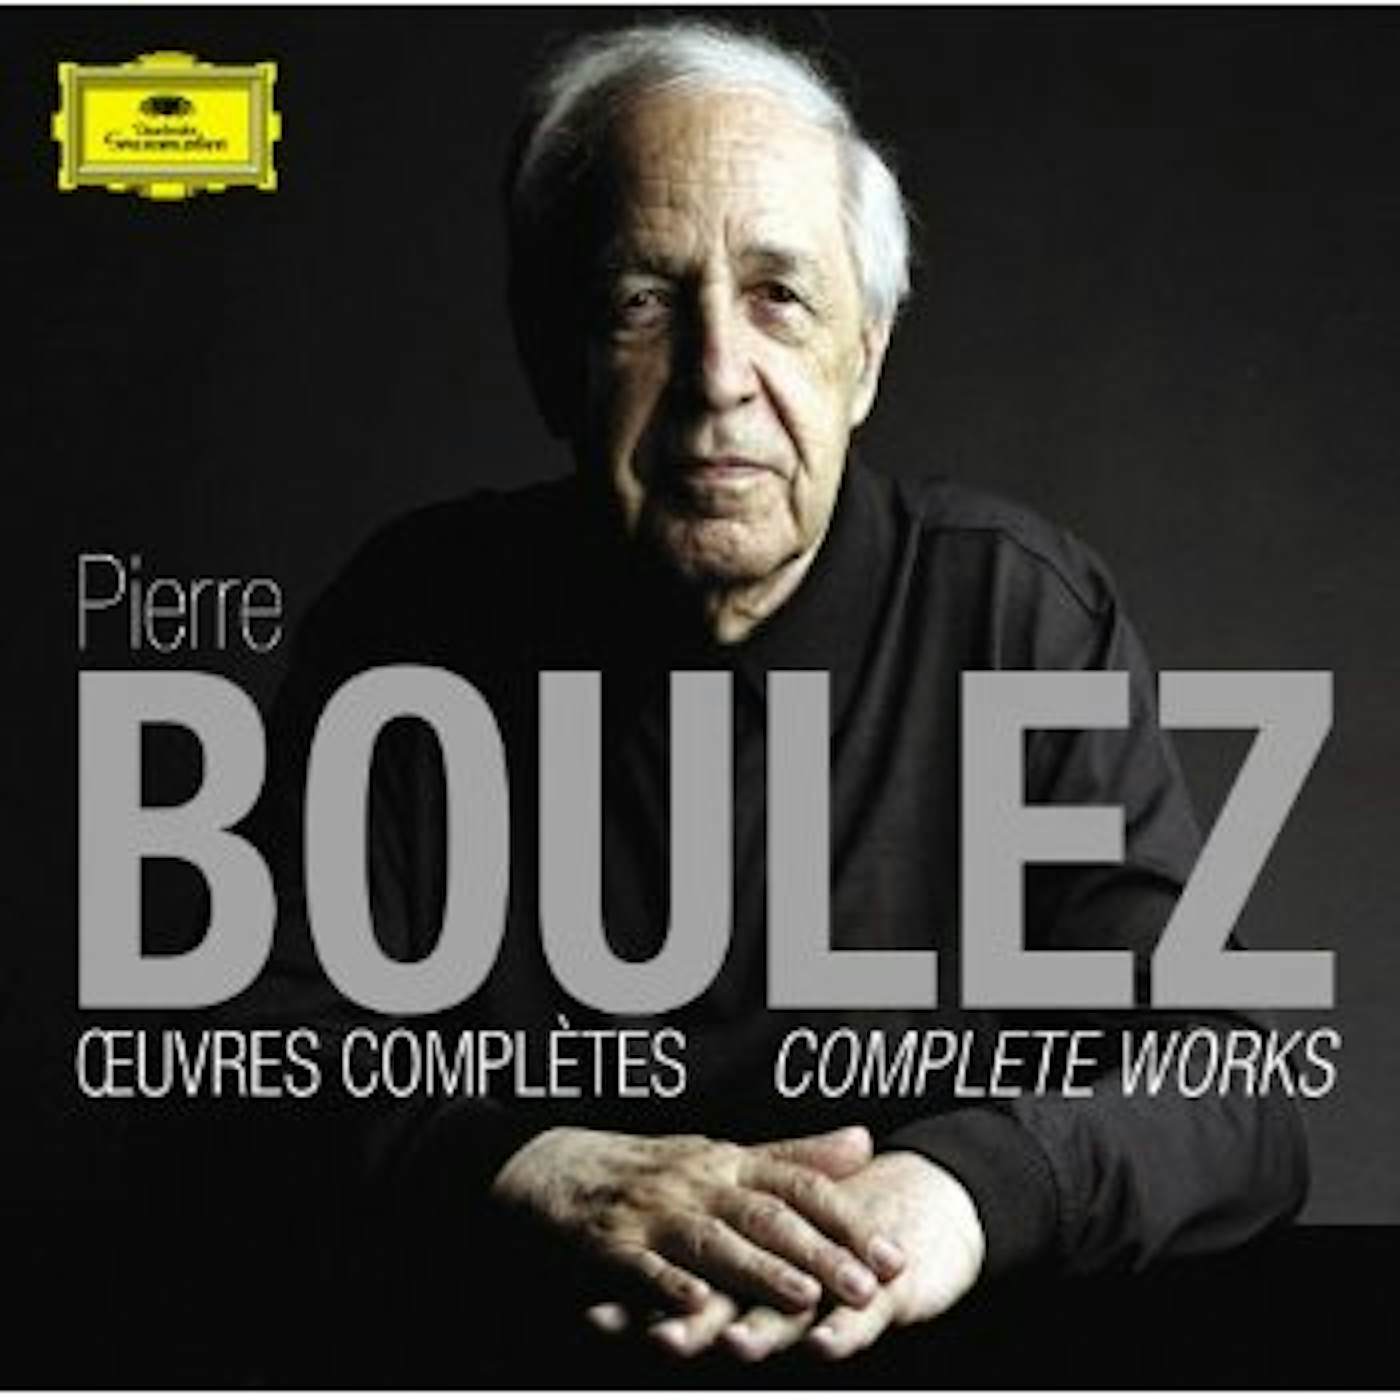 Pierre Boulez COMPLETE WORKS CD